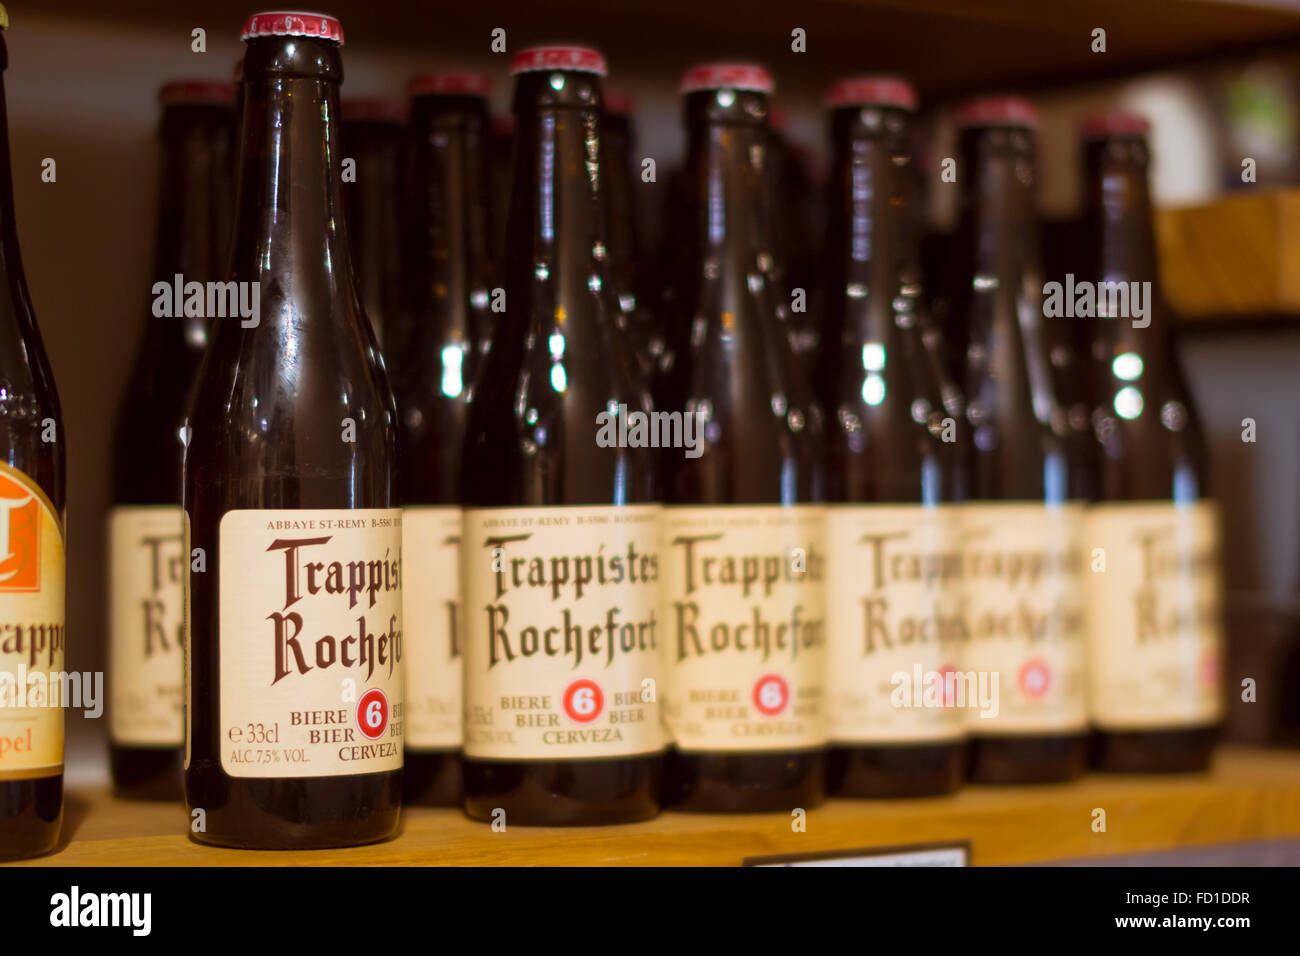 Praga, República Checa - Agosto 27, 2015: Rara cerveza artesanal en las estanterías de las tiendas, el casco antiguo de Praga, República Checa Foto de stock